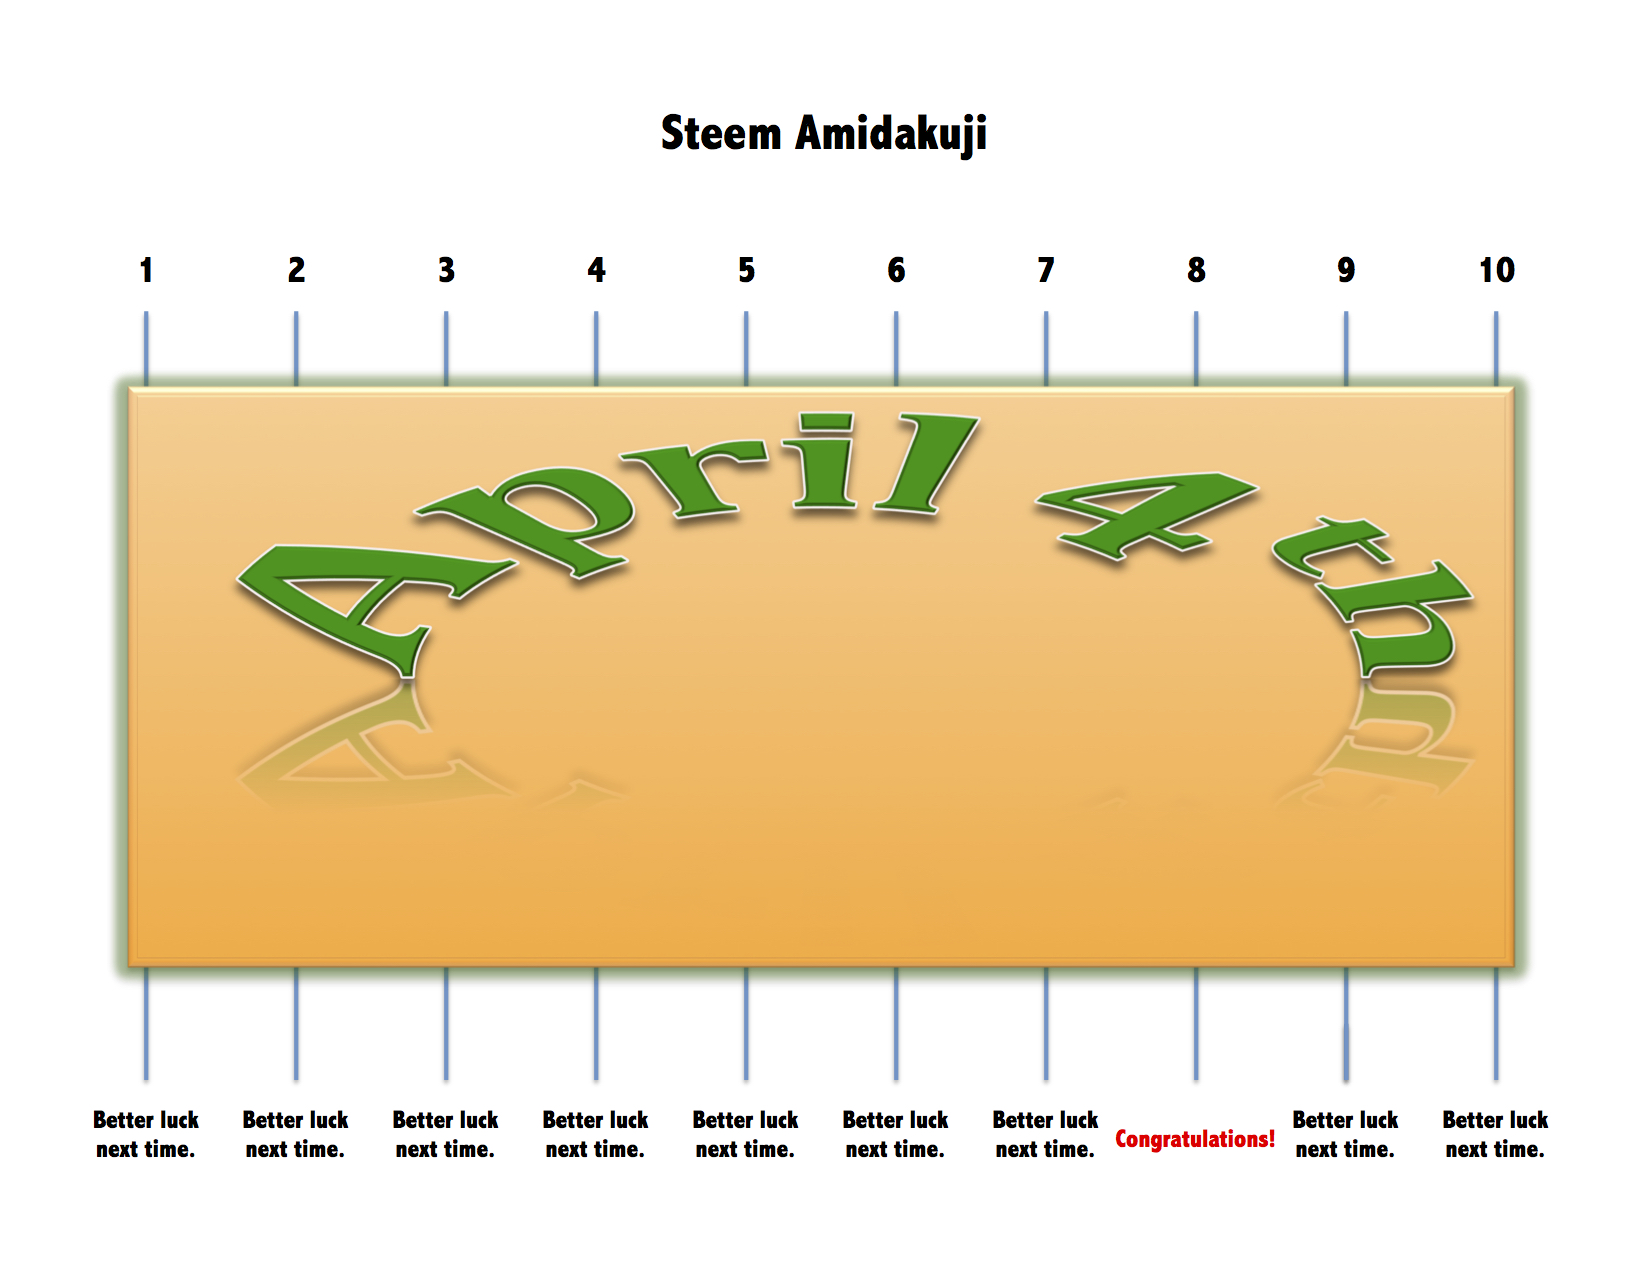 Steem Amidakuji April 4th Real.jpg